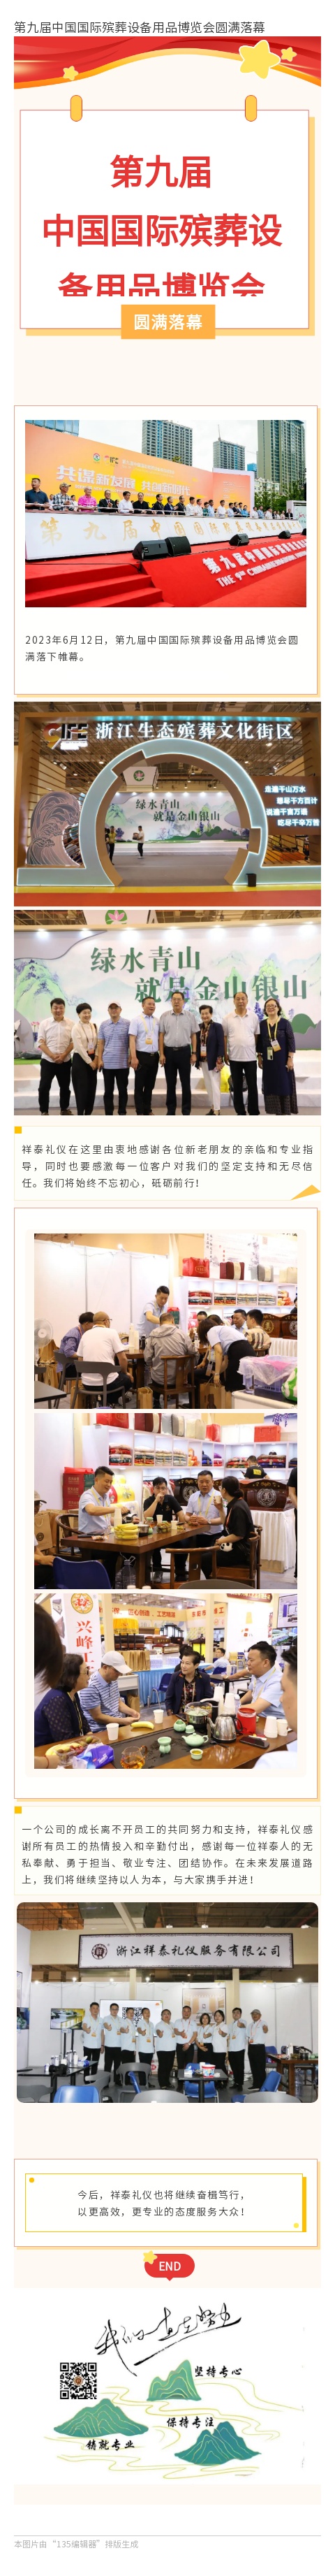 第九届中国国际殡葬设备用品博览会圆满落幕